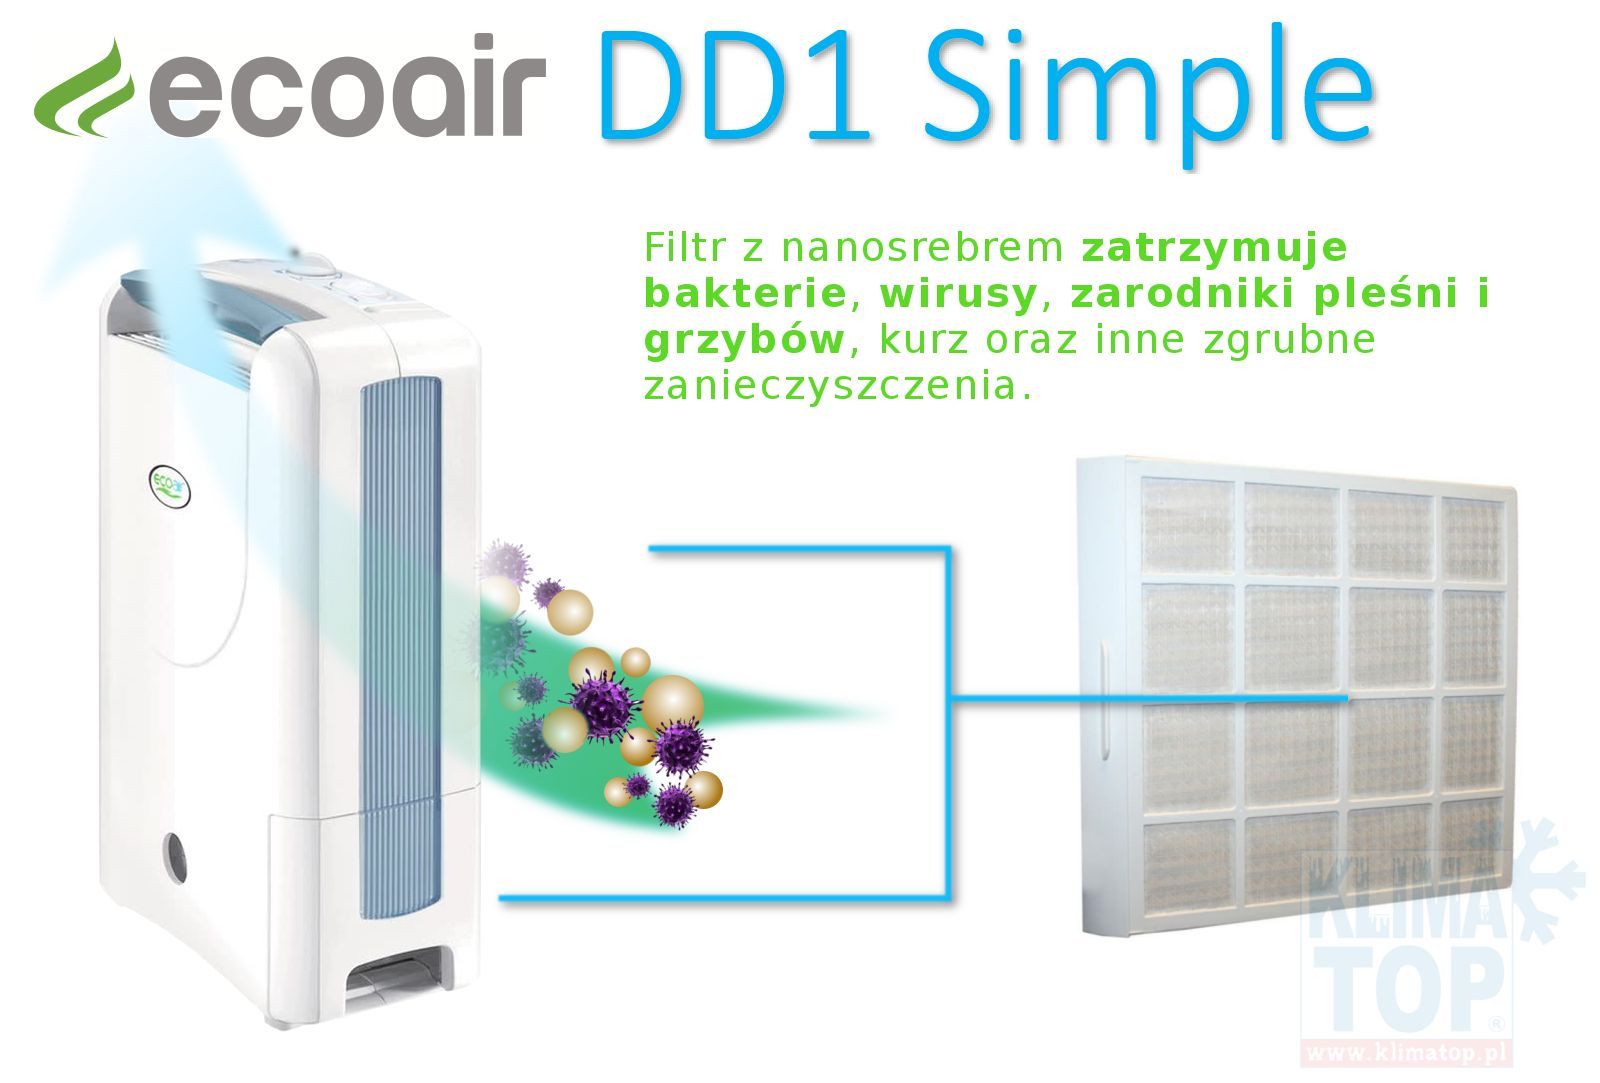 osuszacz powietrza adsorpcyjny Ecoair DD1 Simple usuwa bakterie